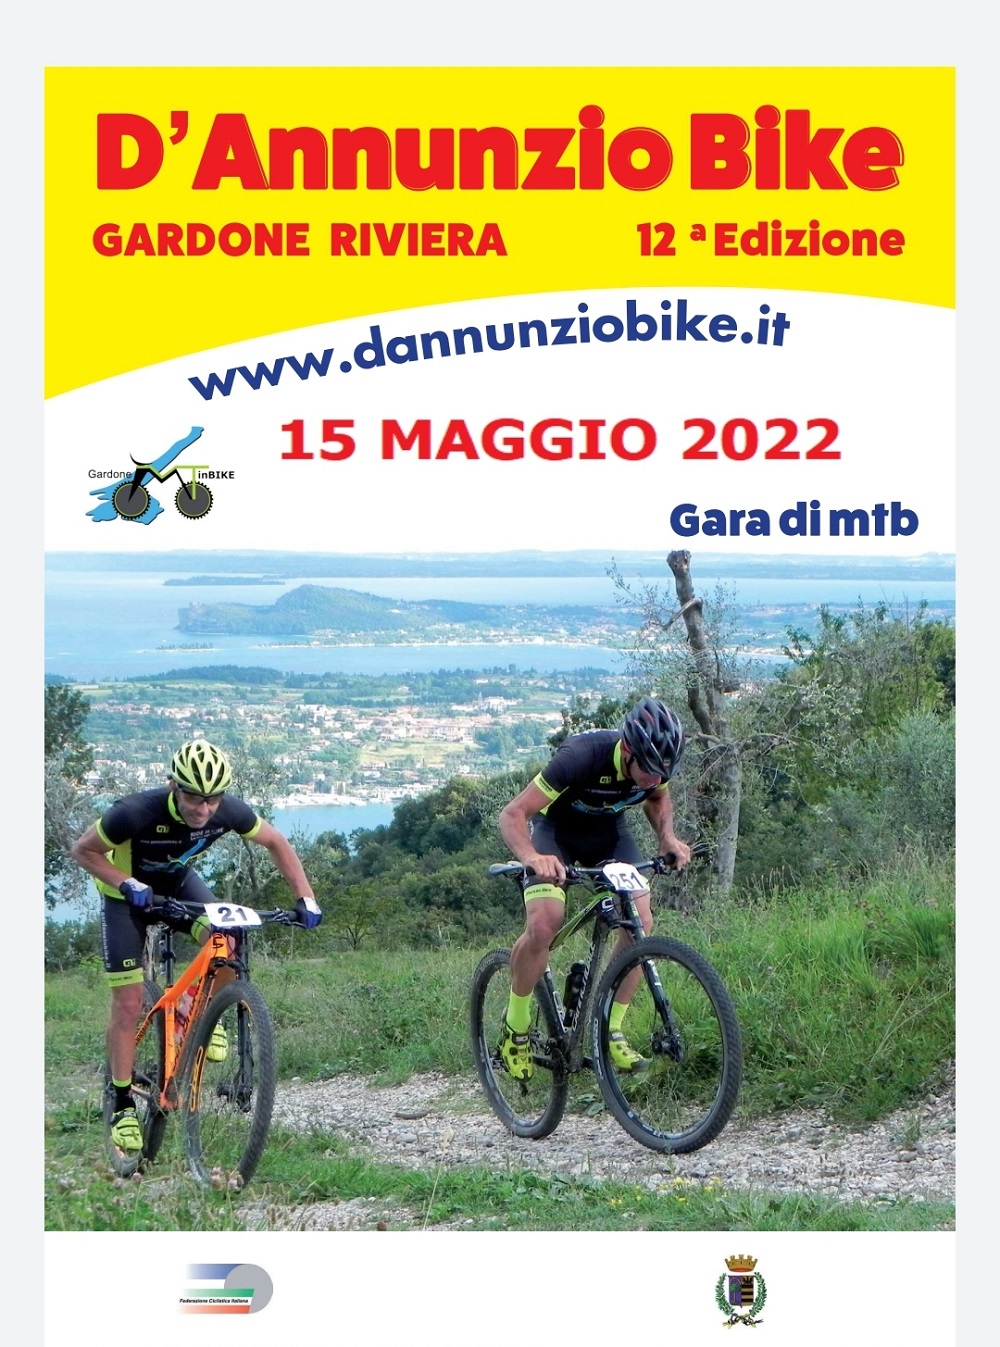 DAnnunzio Bike 2.22 del 06.05.22 foto1